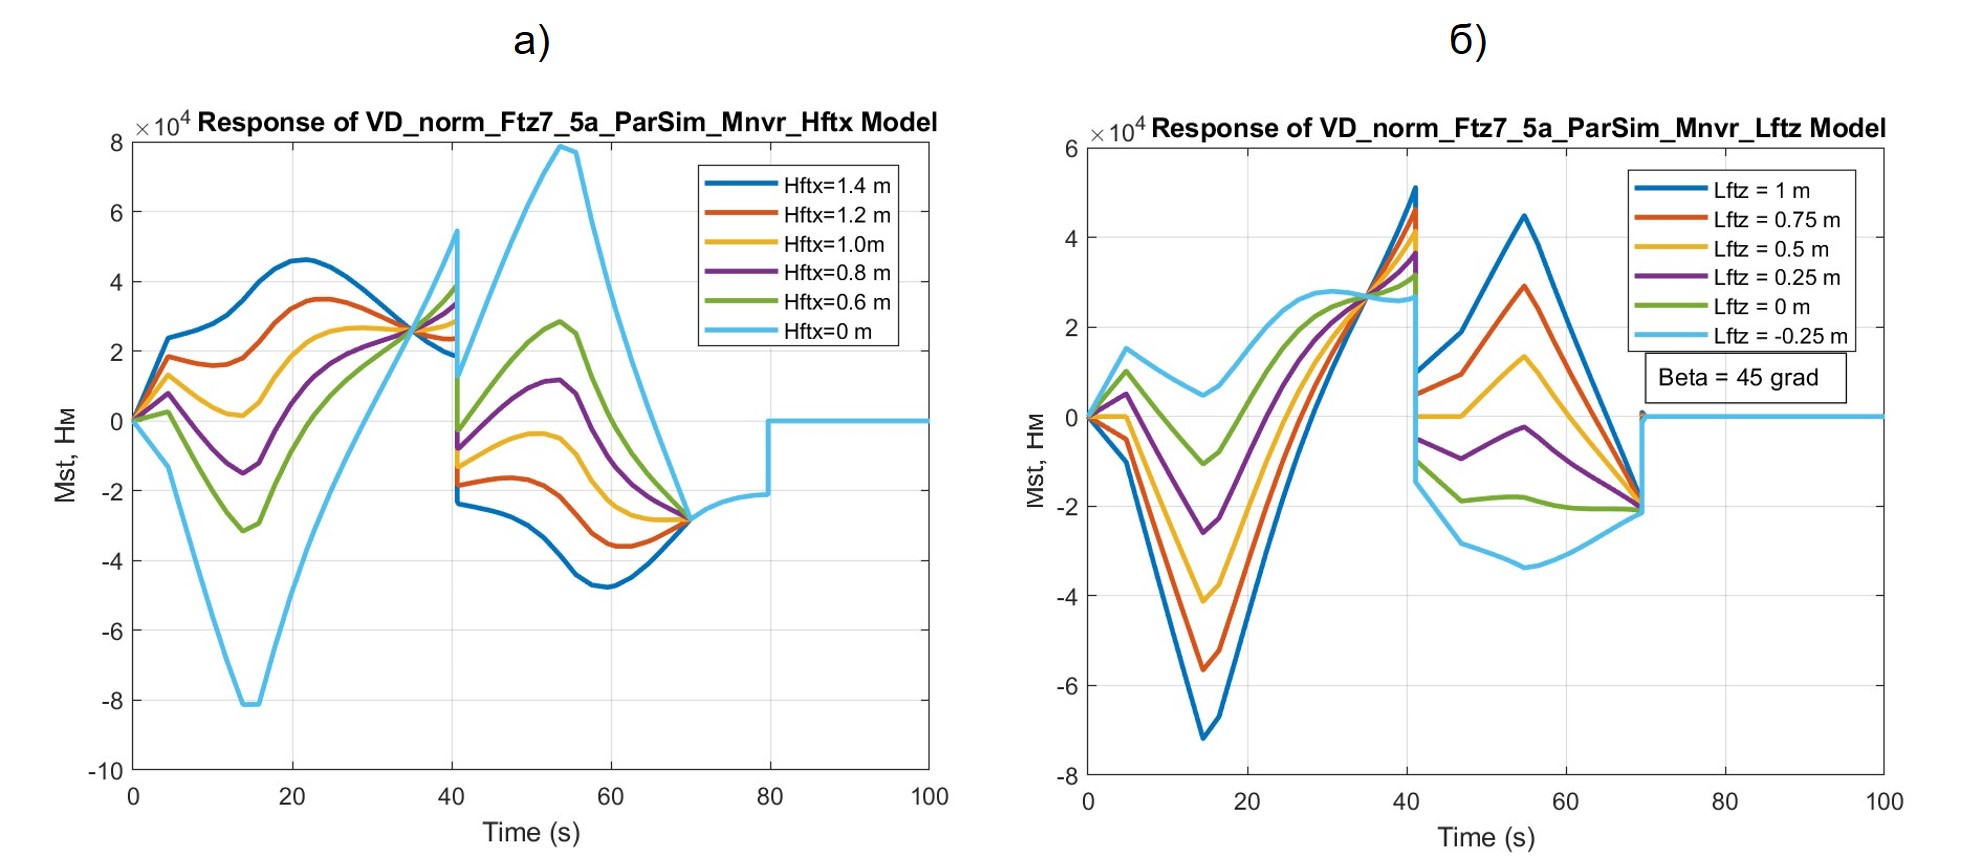  Результаты расчетов процесса изменения ТСМ Mst при различных значениях hFTx (а) и lFTz (б)